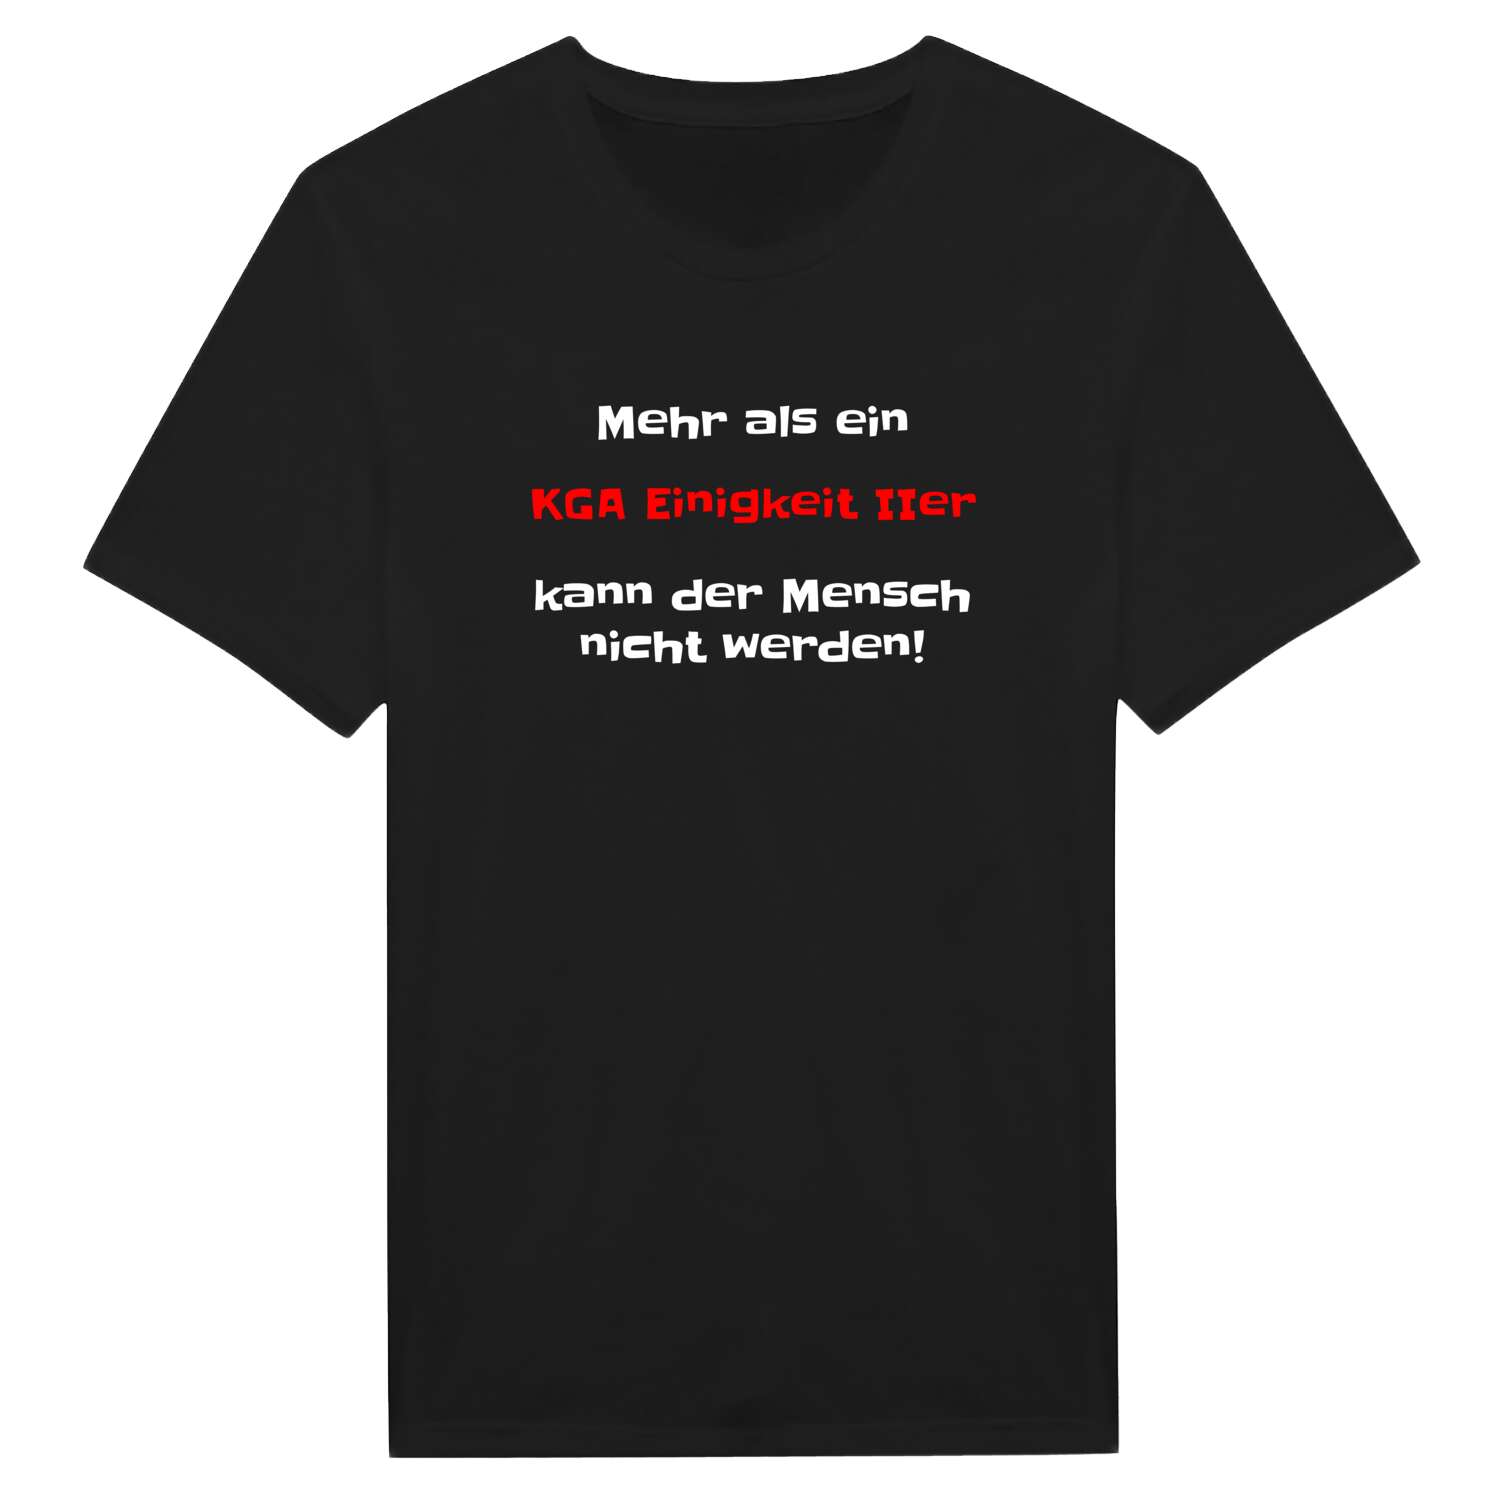 KGA Einigkeit II T-Shirt »Mehr als ein«